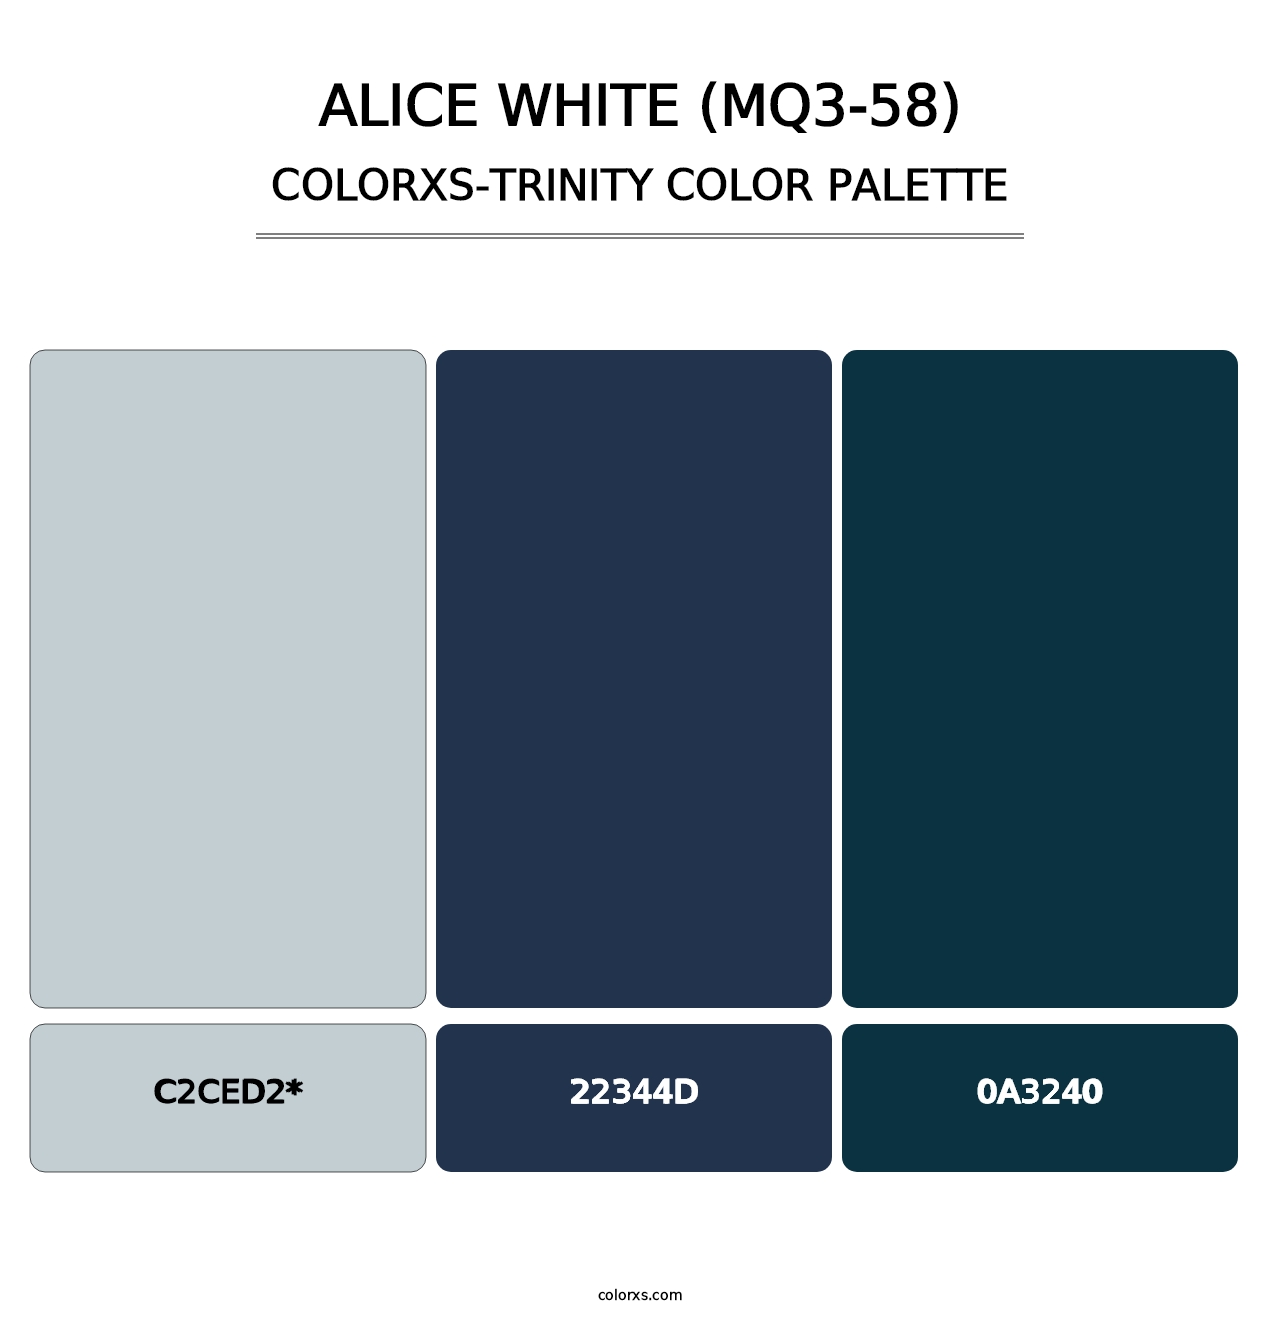 Alice White (MQ3-58) - Colorxs Trinity Palette